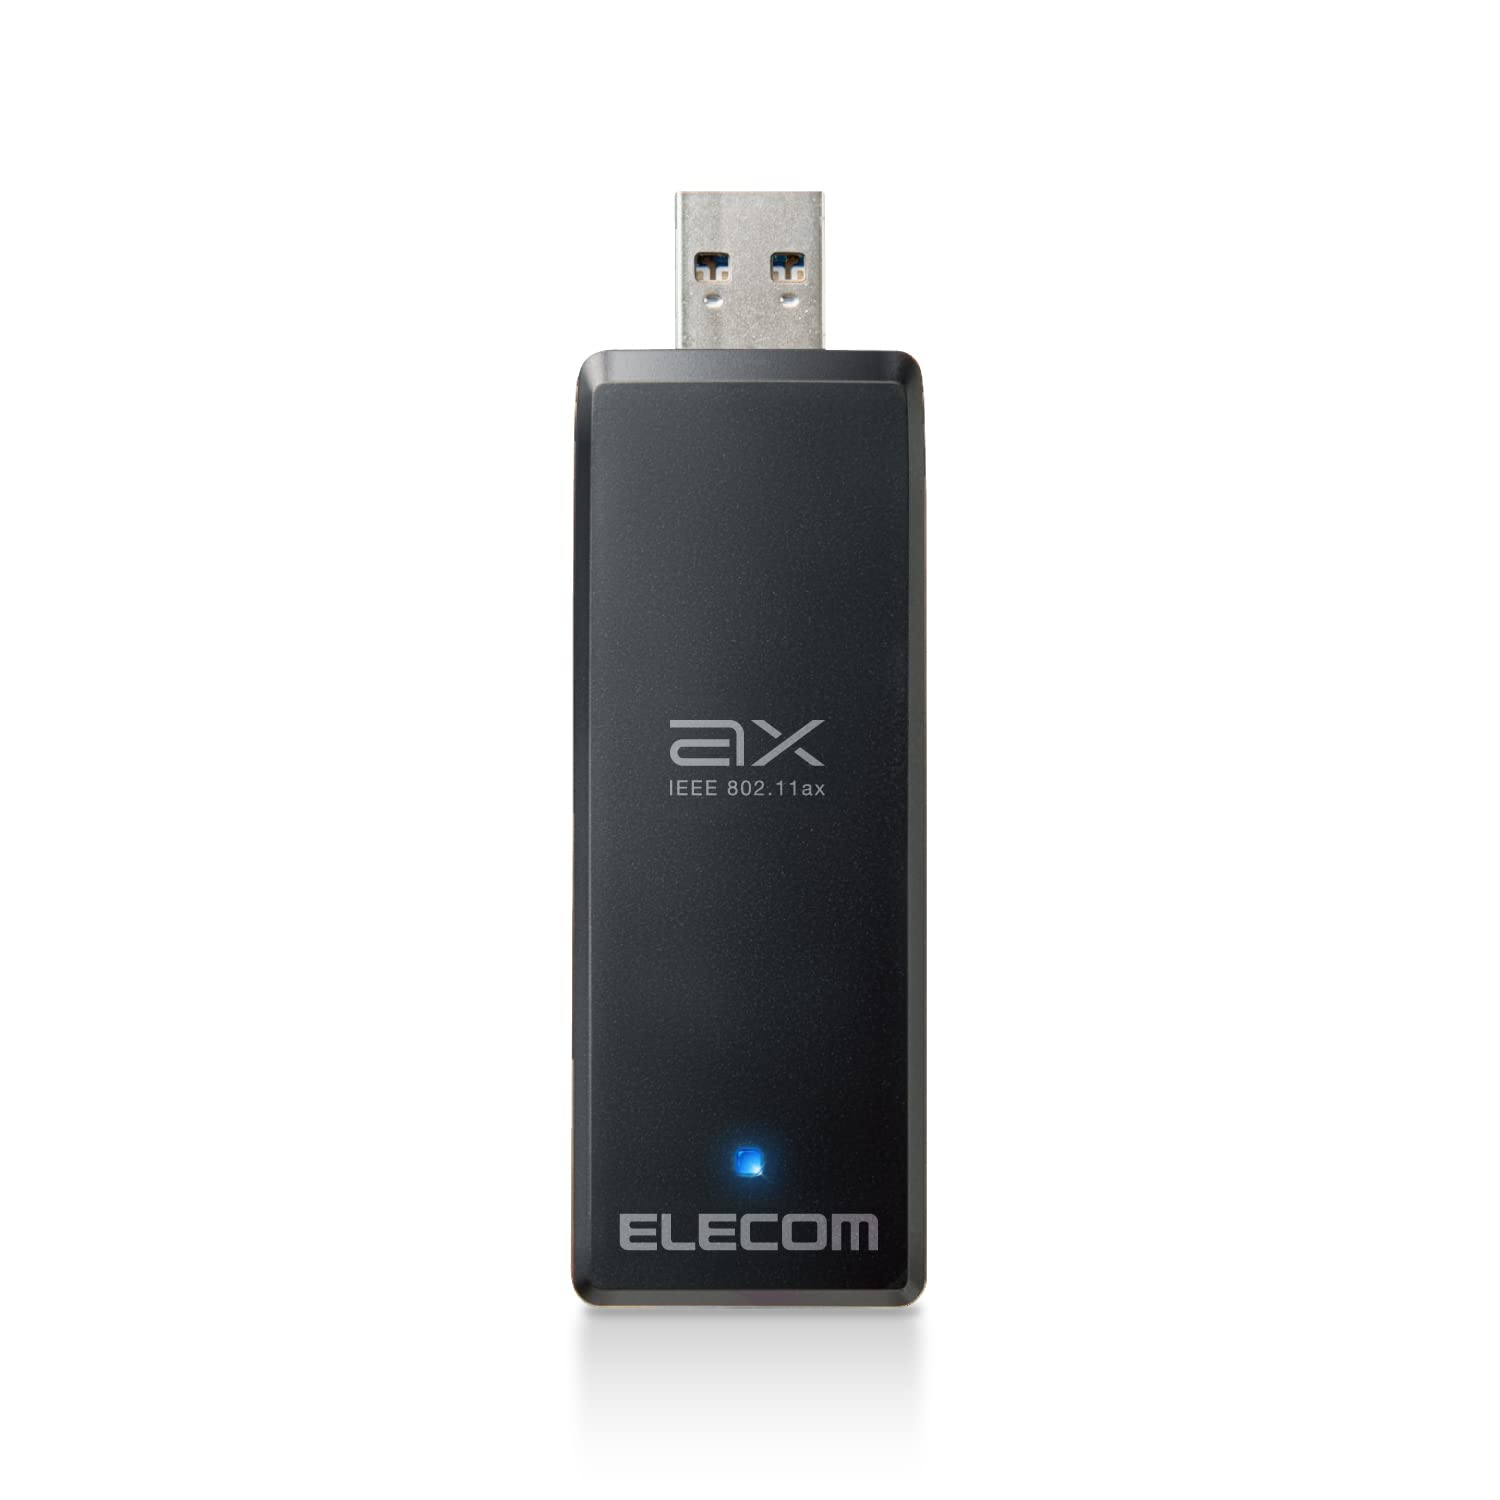 エレコム WiFi 無線LAN 子機 Ｗifi6 1201Mbps+574Mbps 5GHz 2.4GHz USB3.0 USB-A 11ax/ac/n/g/b/a ビームフォーミングZ対応 MU-MIMO対応